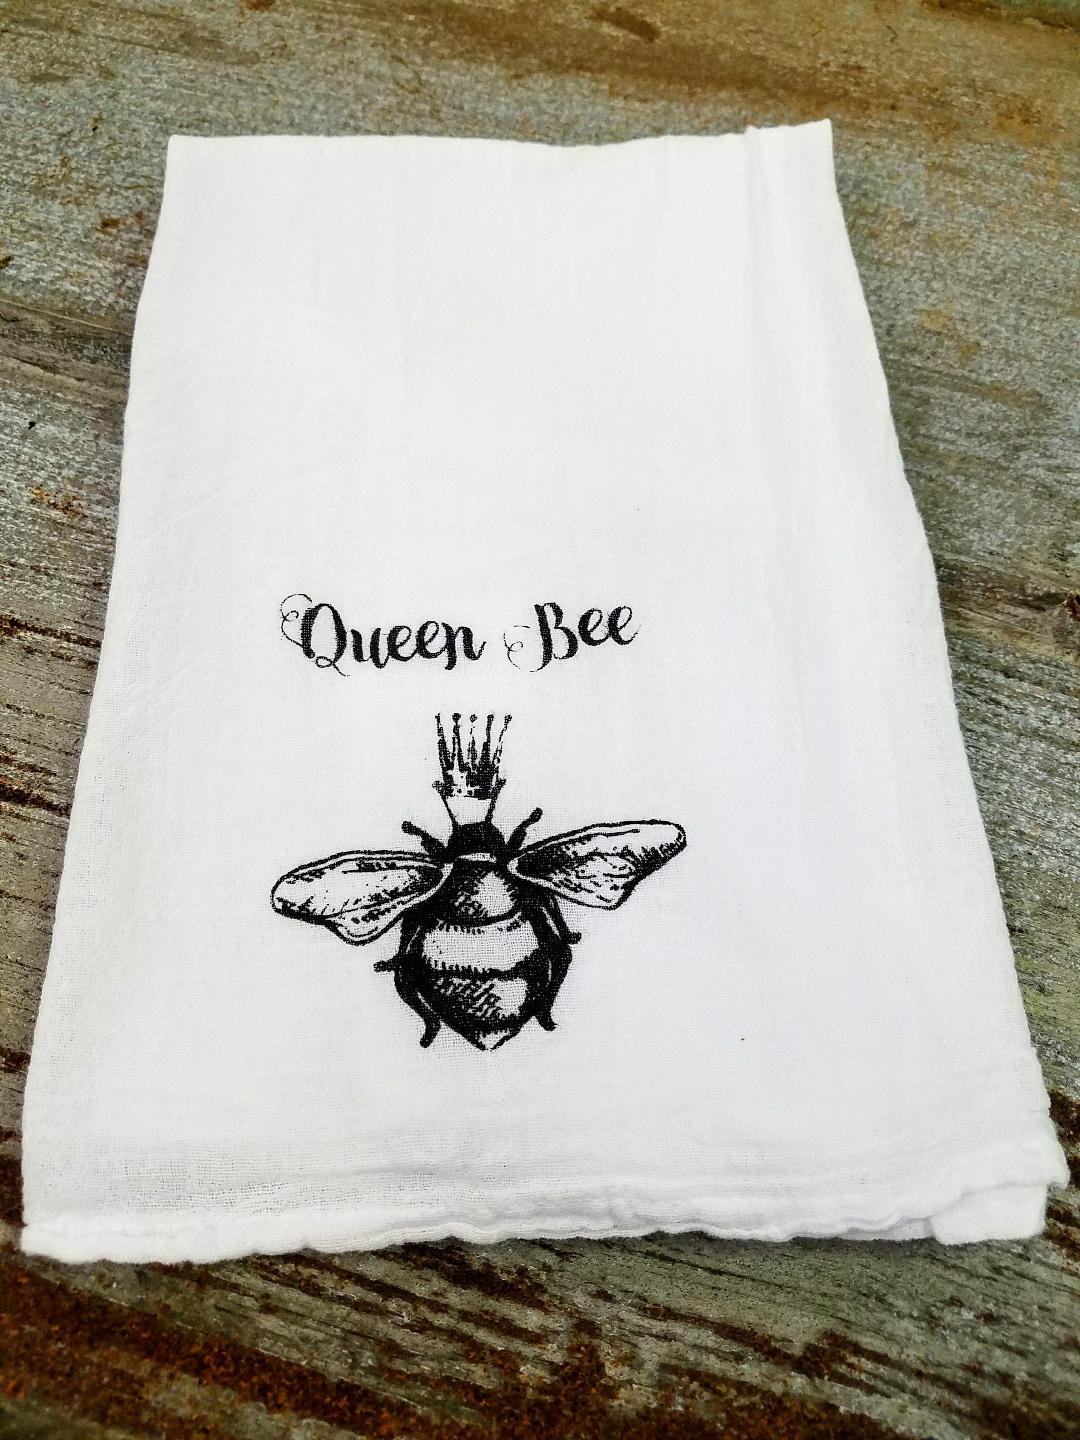 100% Cotton Flour Sack Towel - Queen Bee